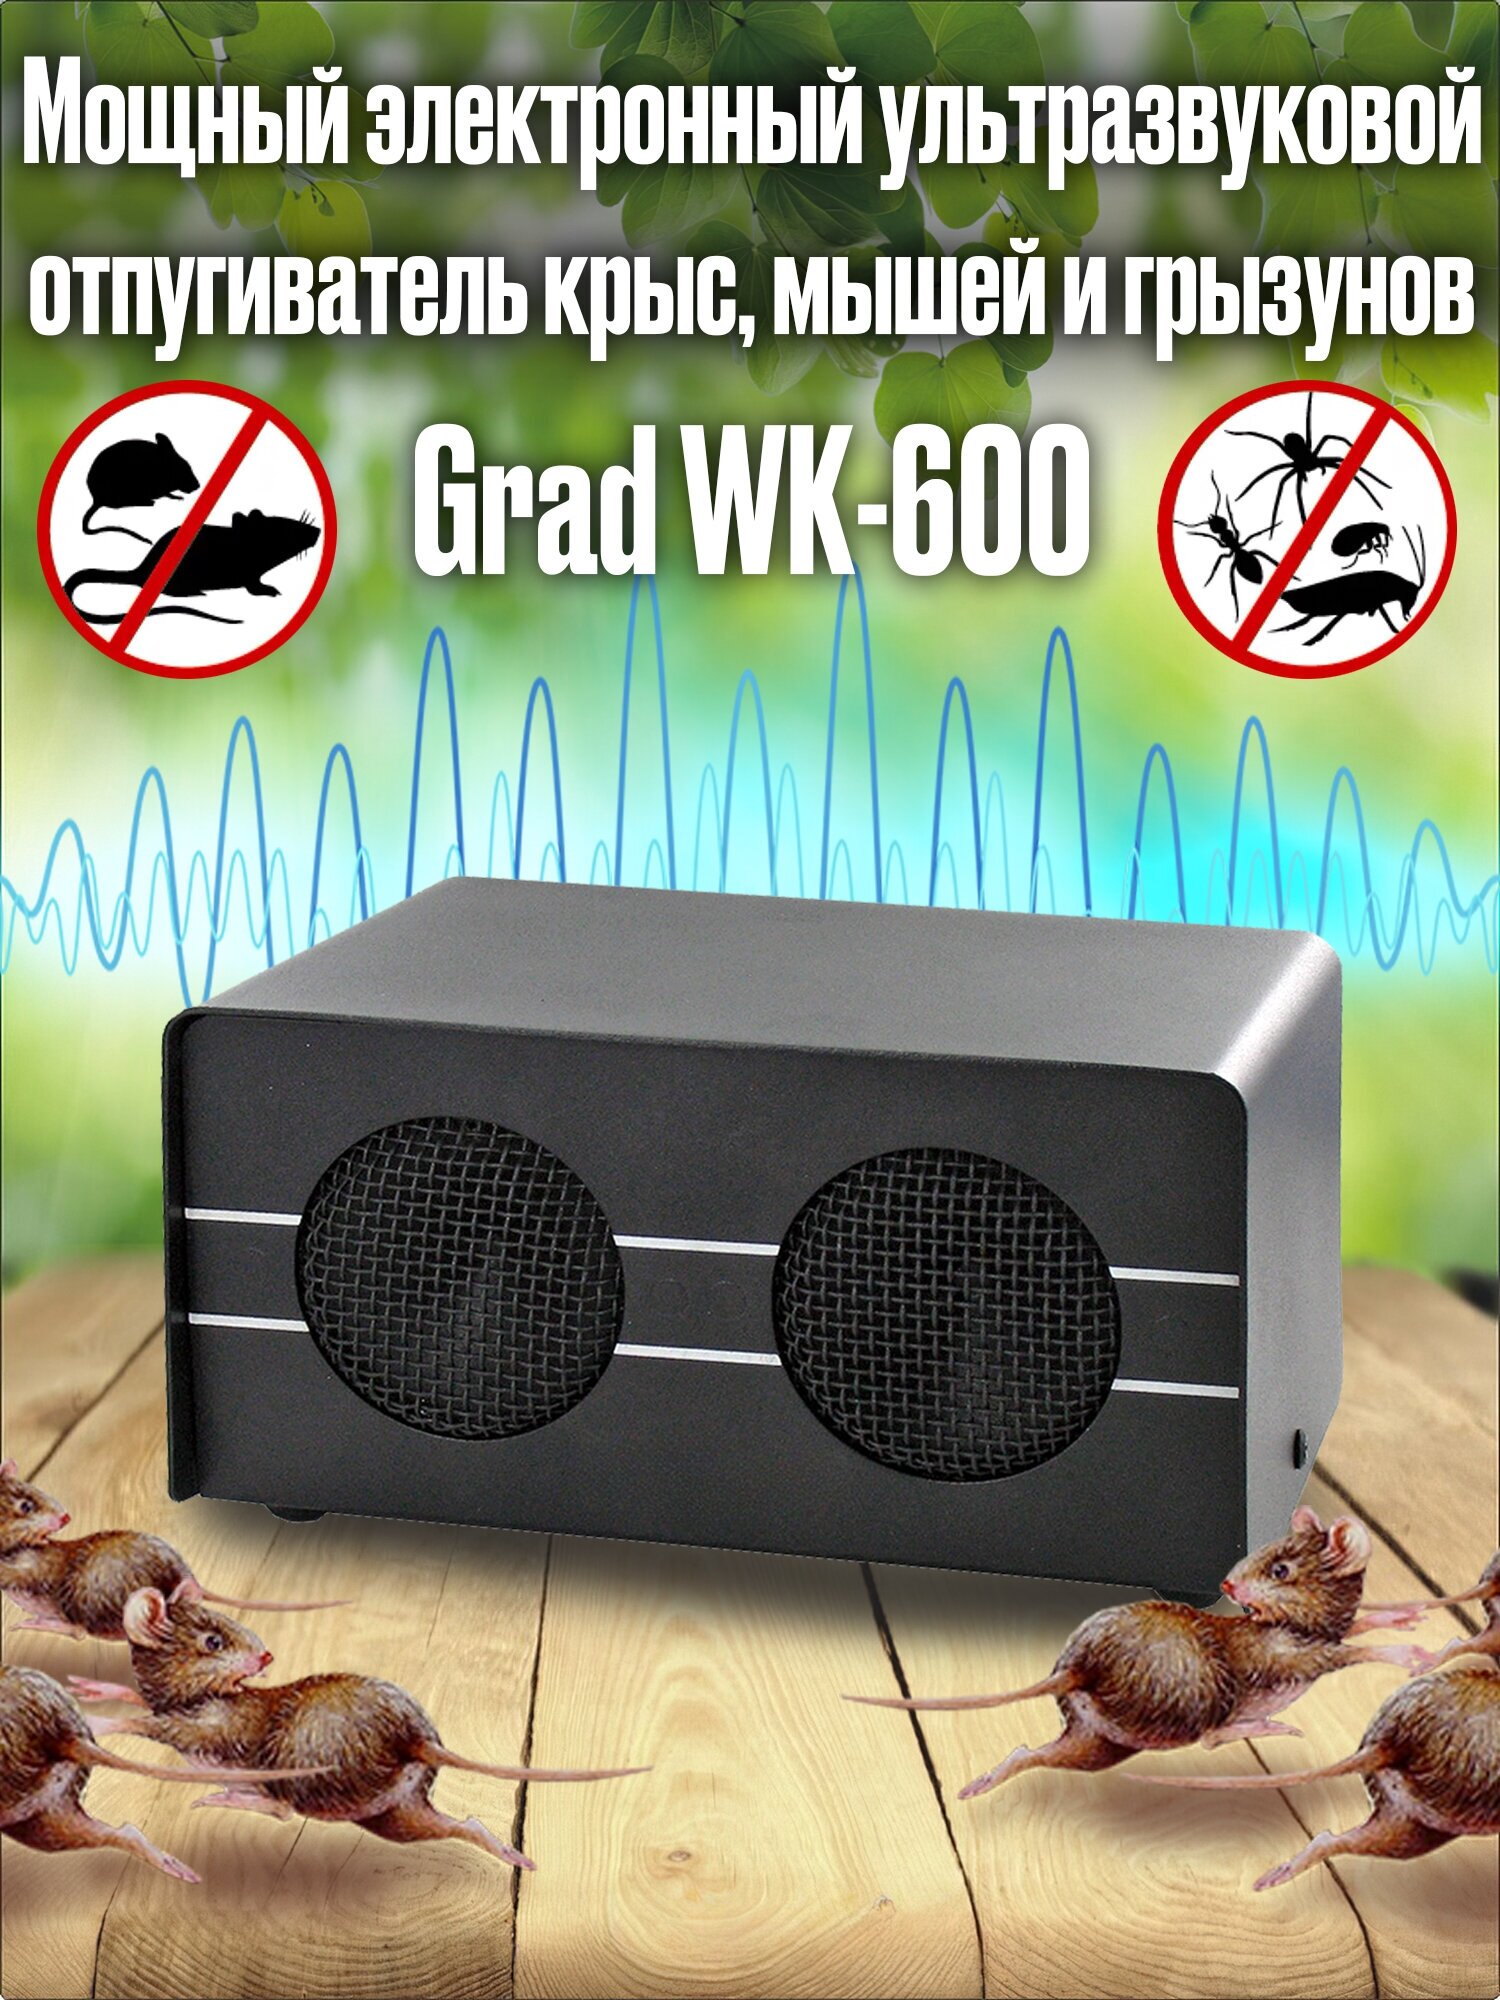 Мощный электронный ультразвуковой отпугиватель крыс, мышей и грызунов Grad WK-600